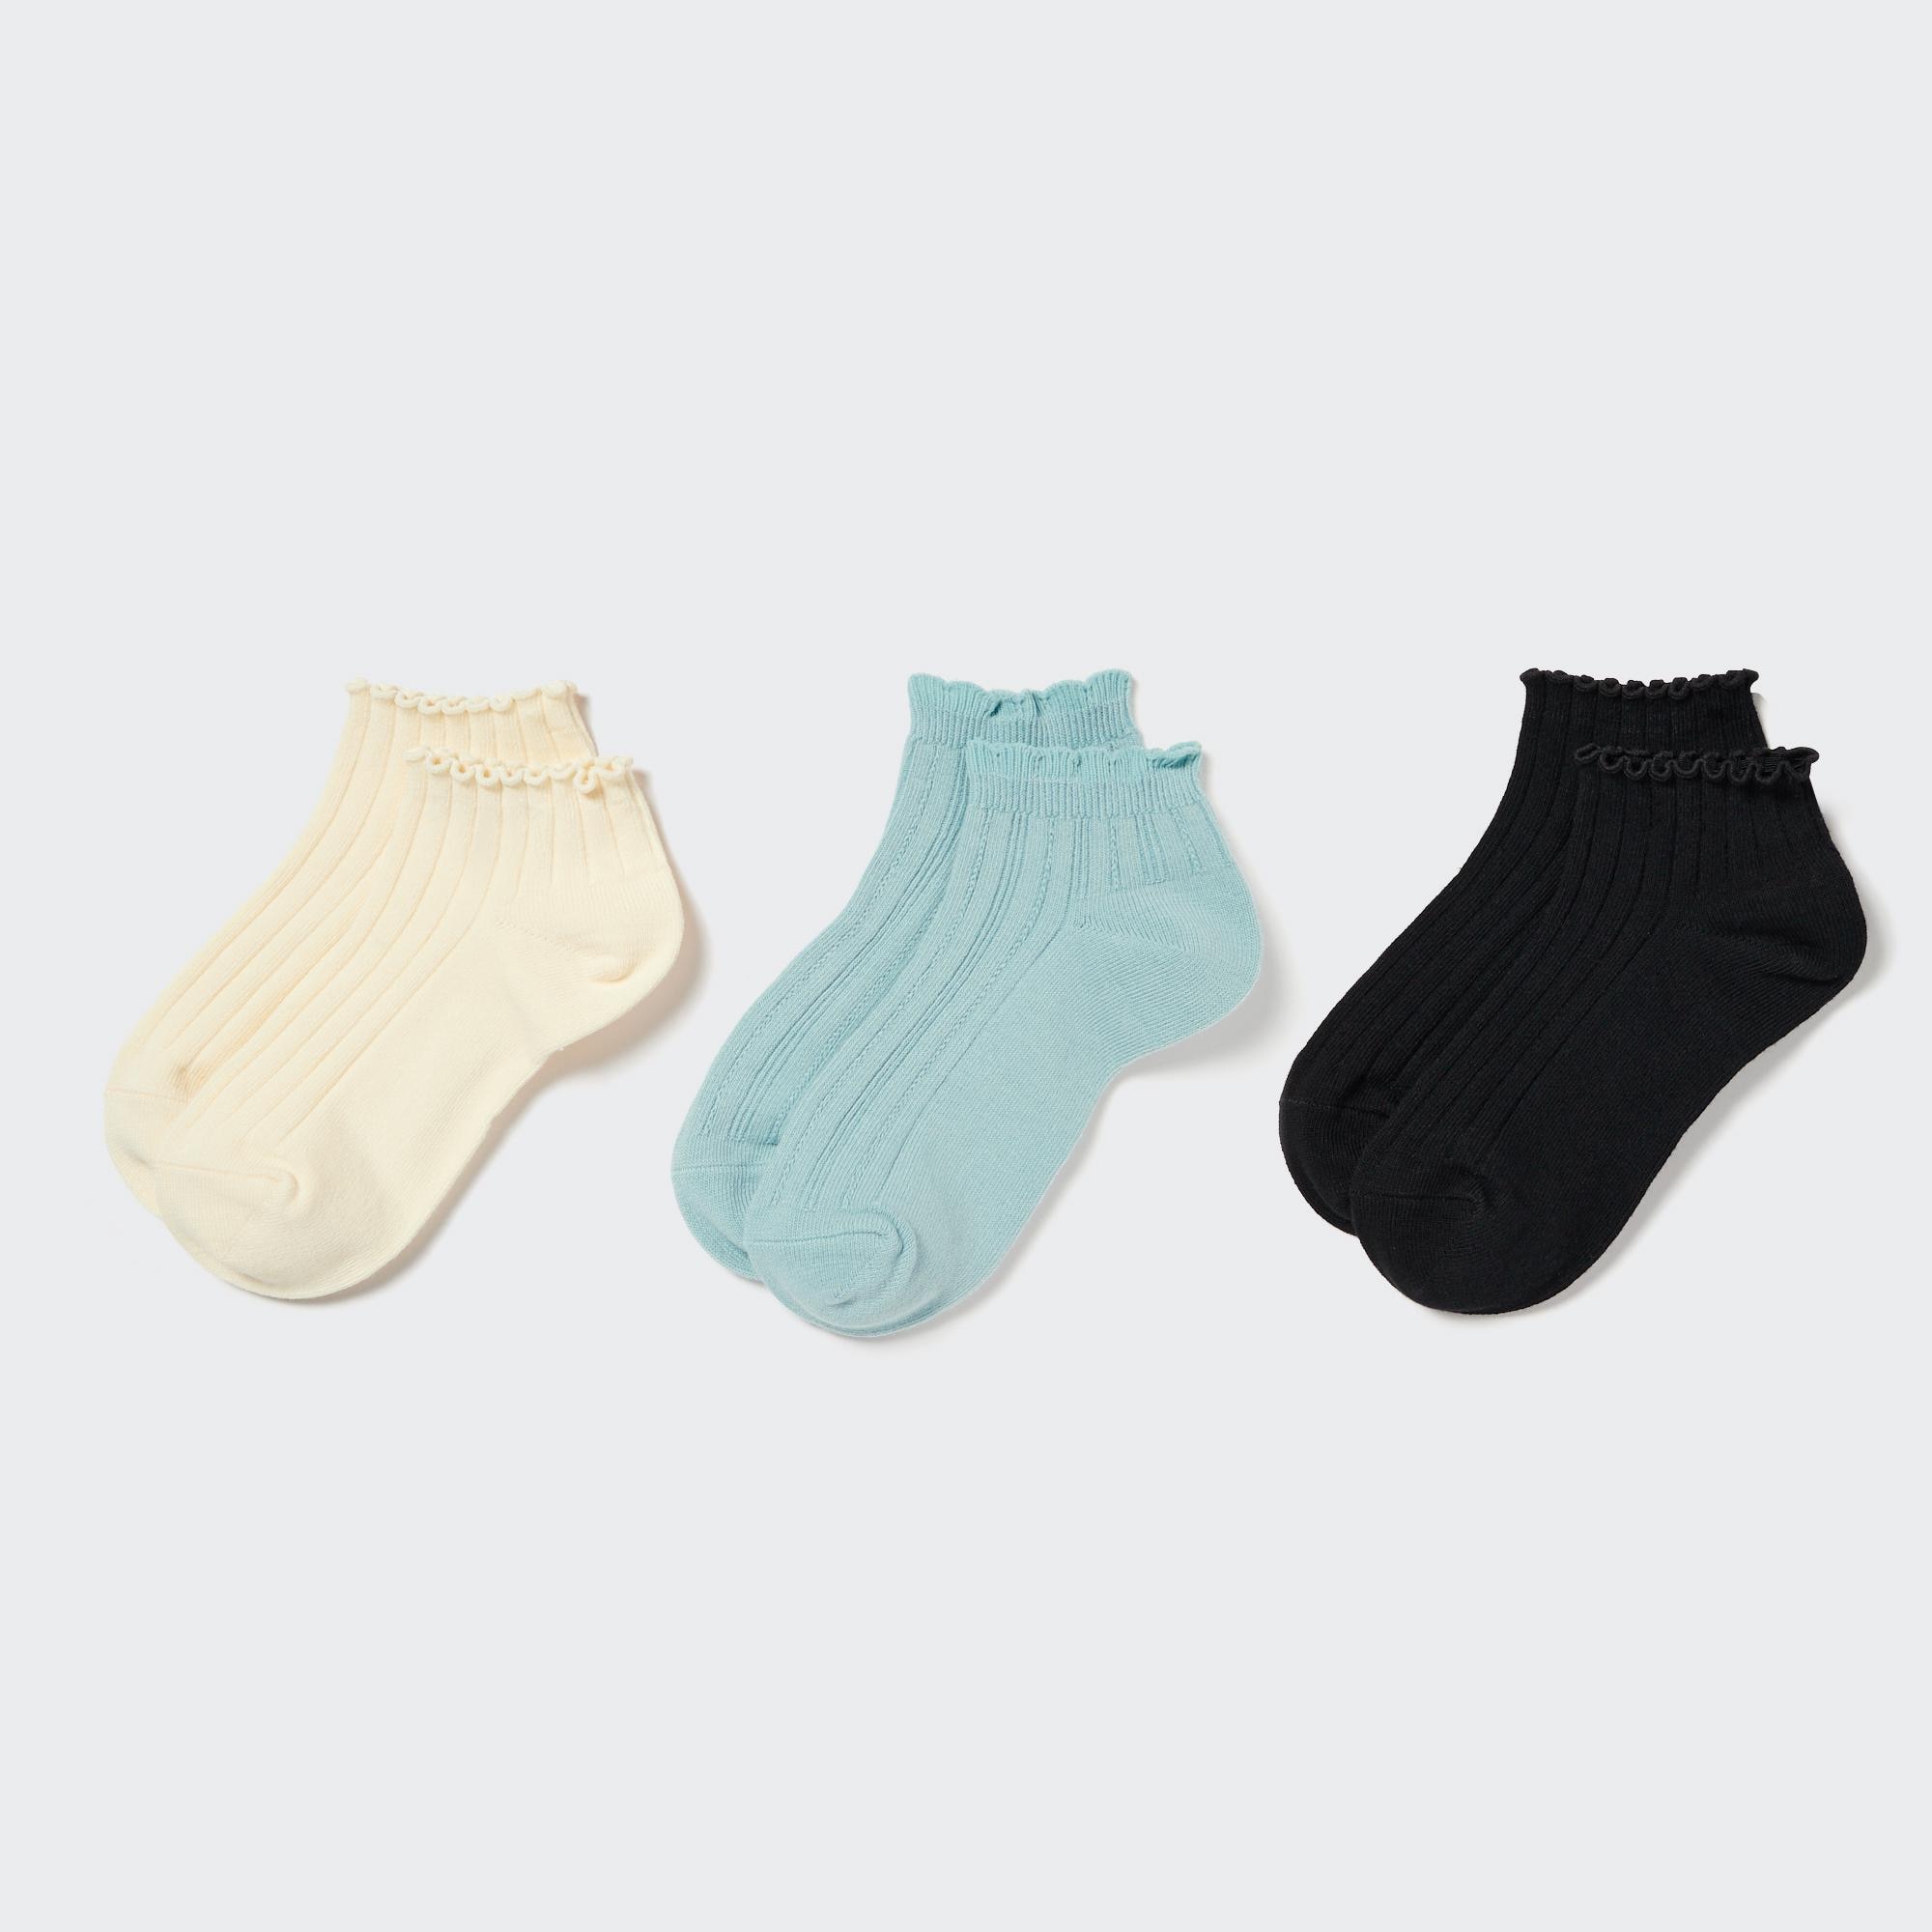 Calcetines Niño -【Comprar Ahora】- 40 Grados, calcetines termicos